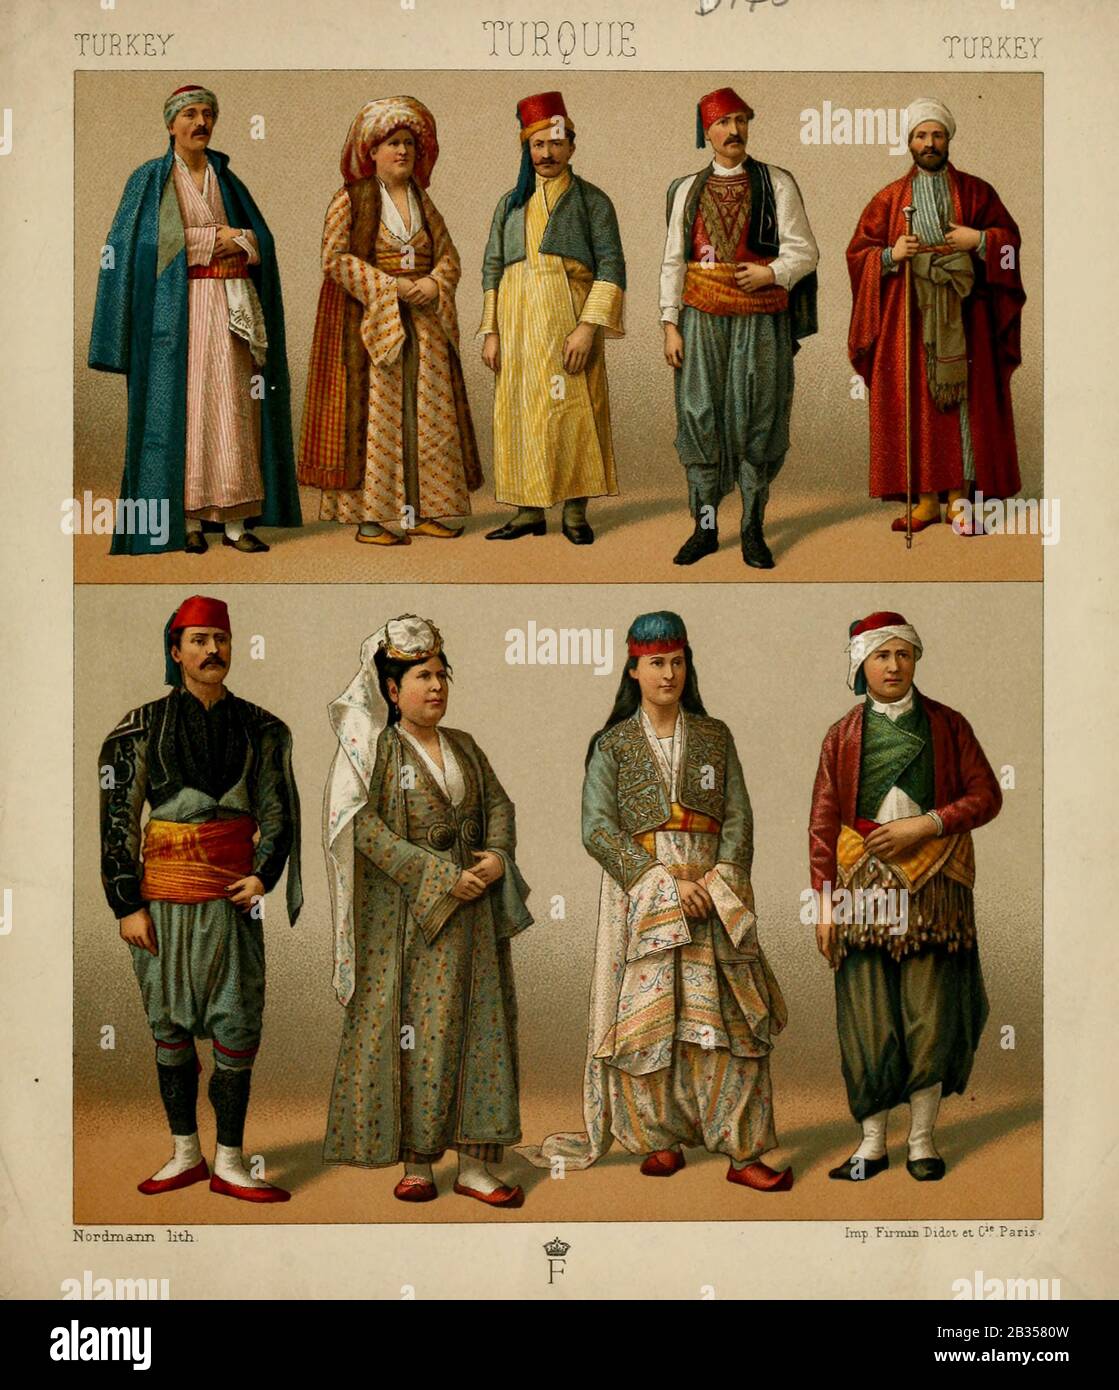 turca fotografías e imágenes resolución - Alamy